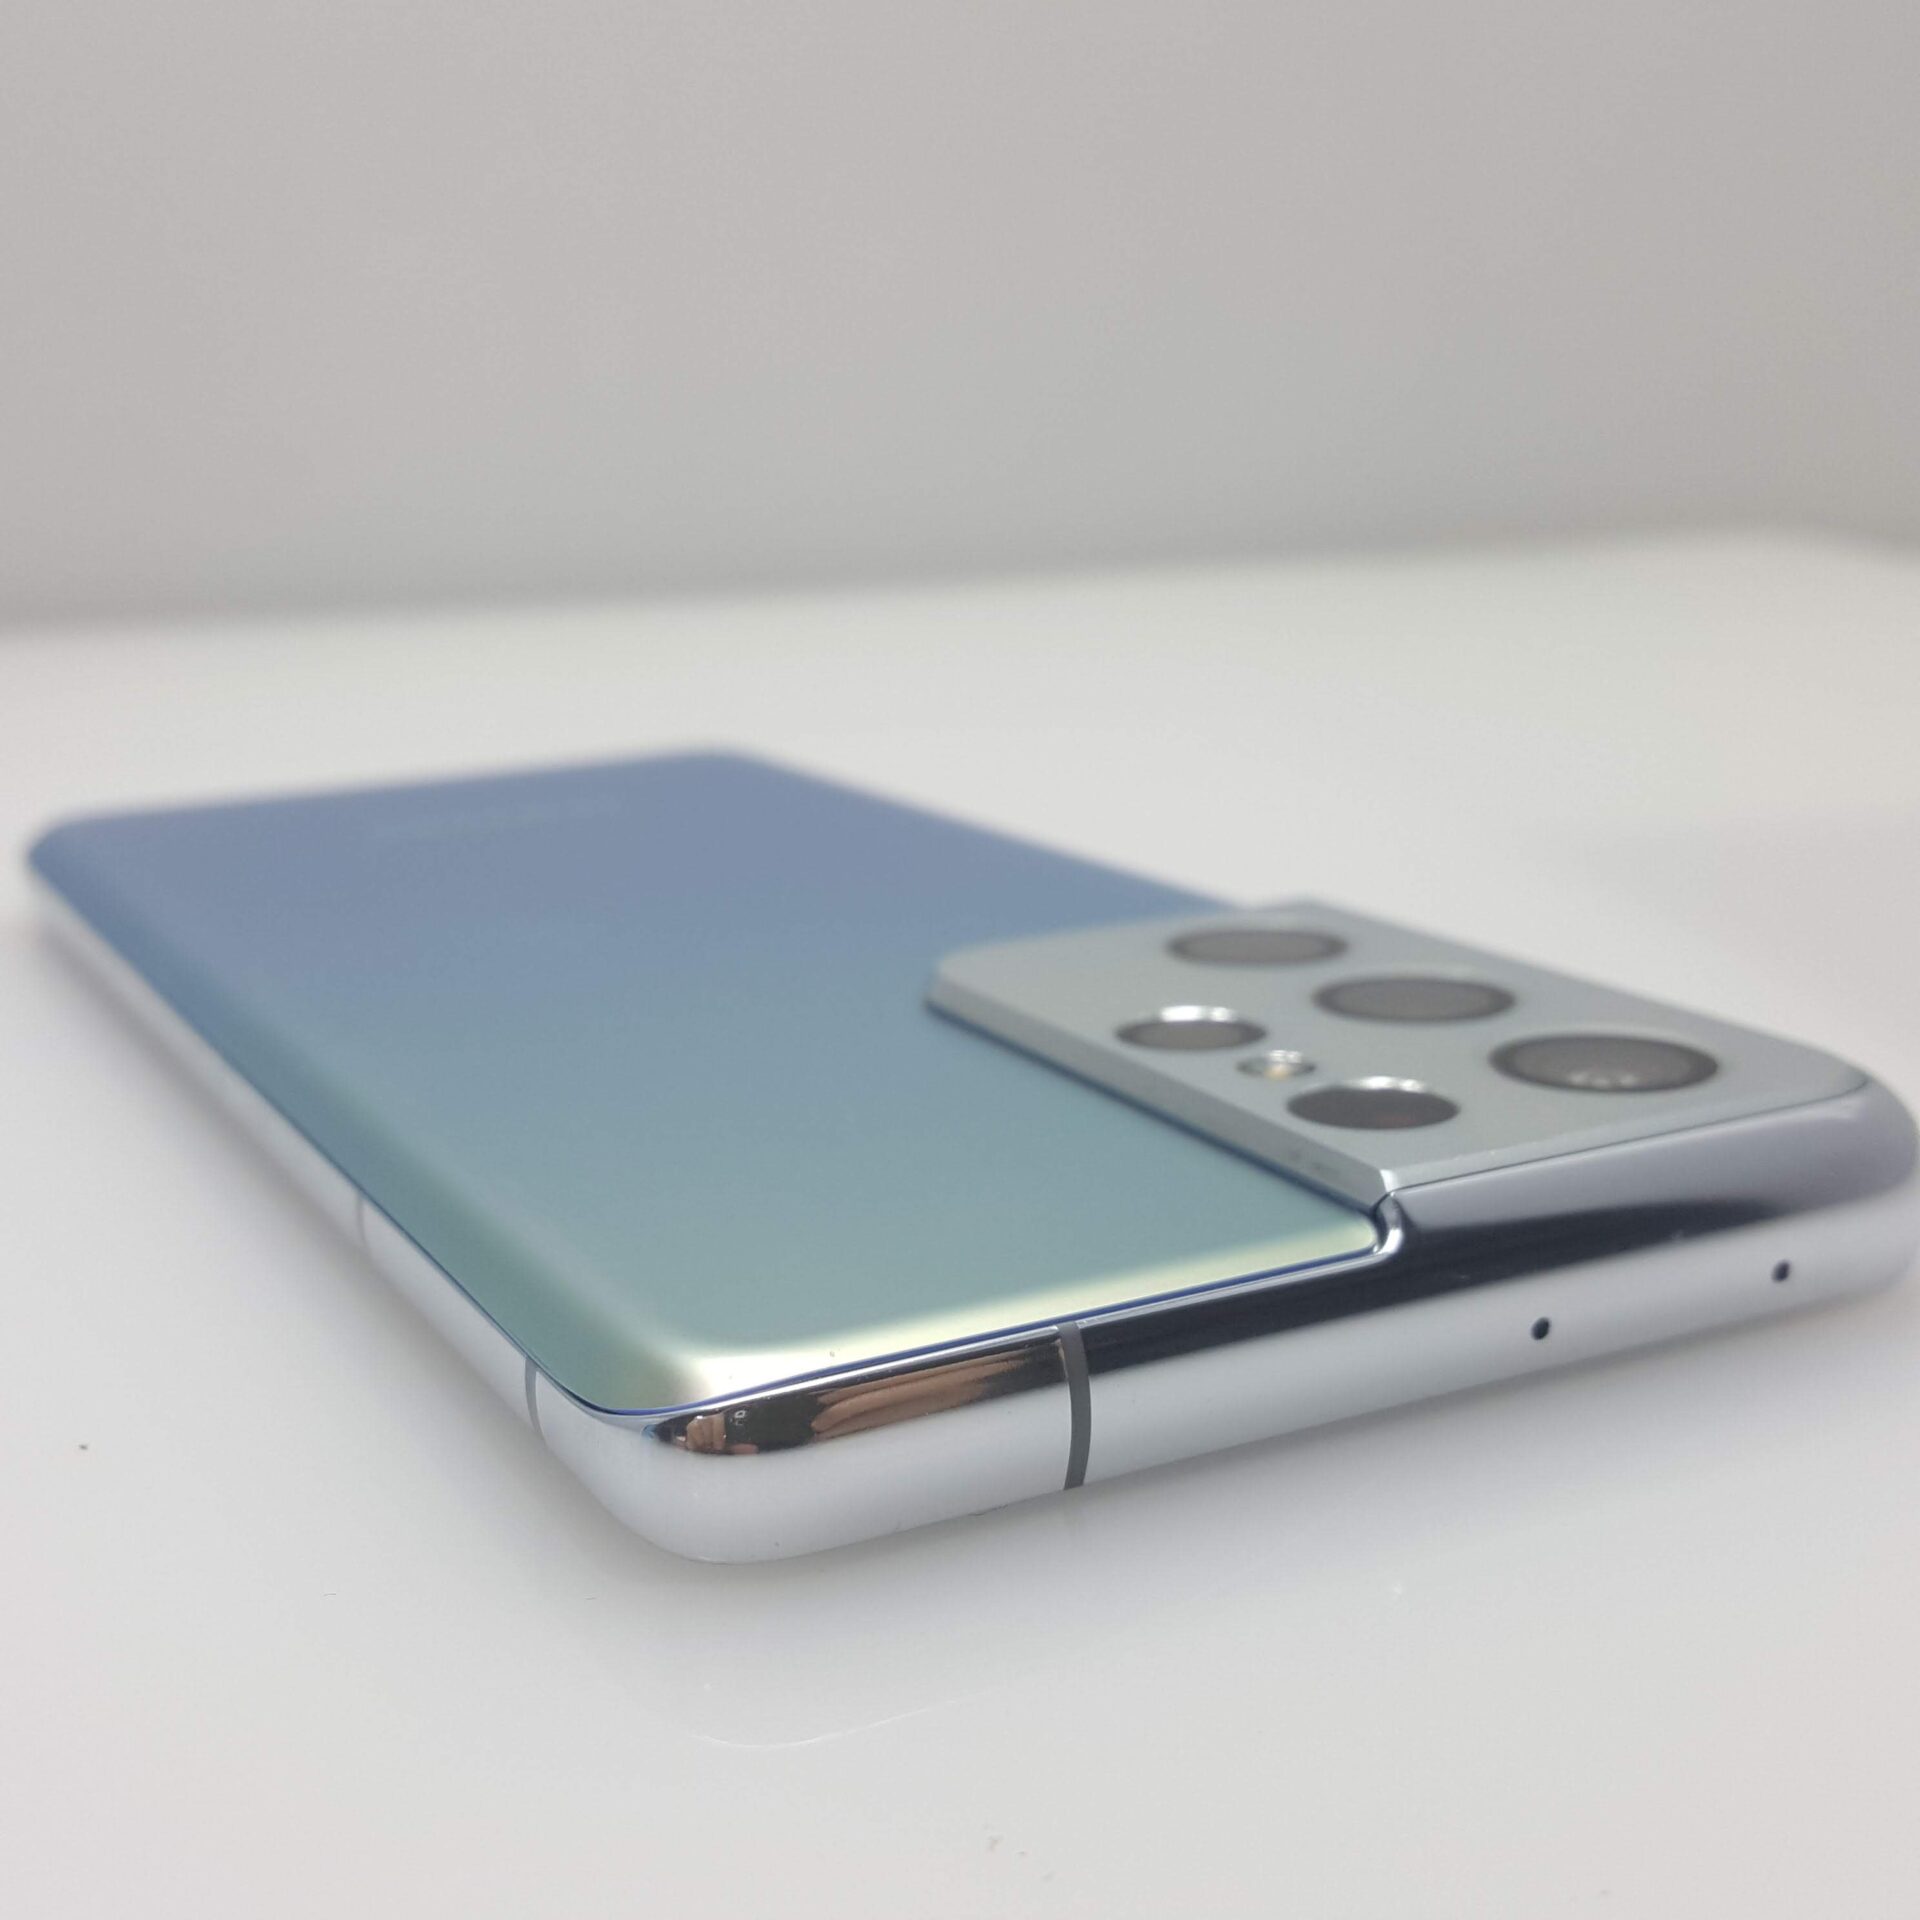 Samsung Galaxy S21 Ultra 5G (Dual Sim) 256GB Phantom Silver